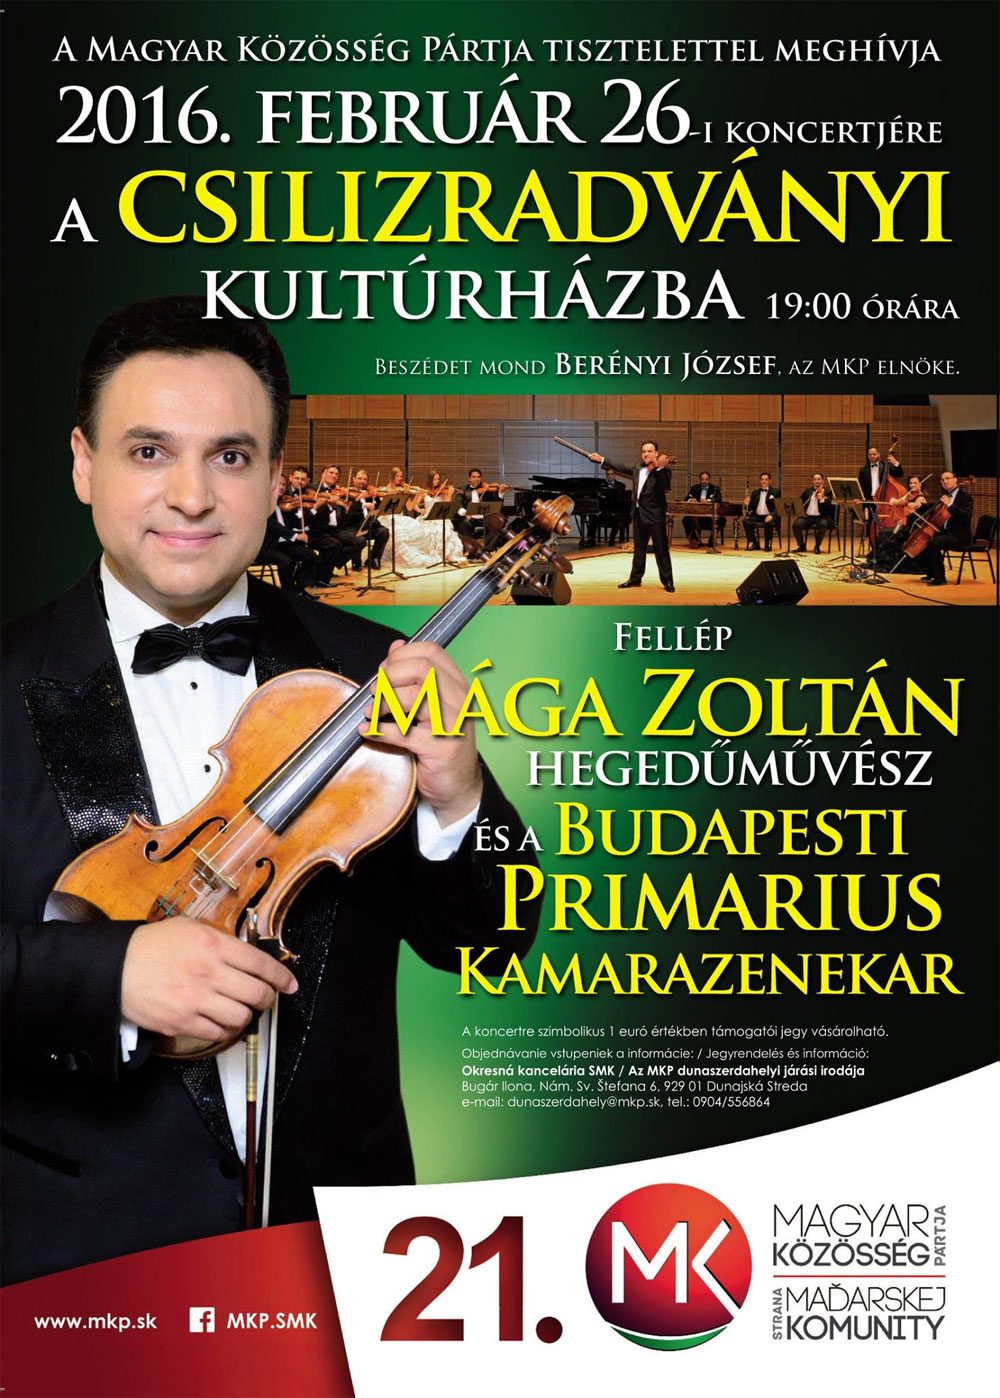 Mága Zoltán koncertje Csilizradványon